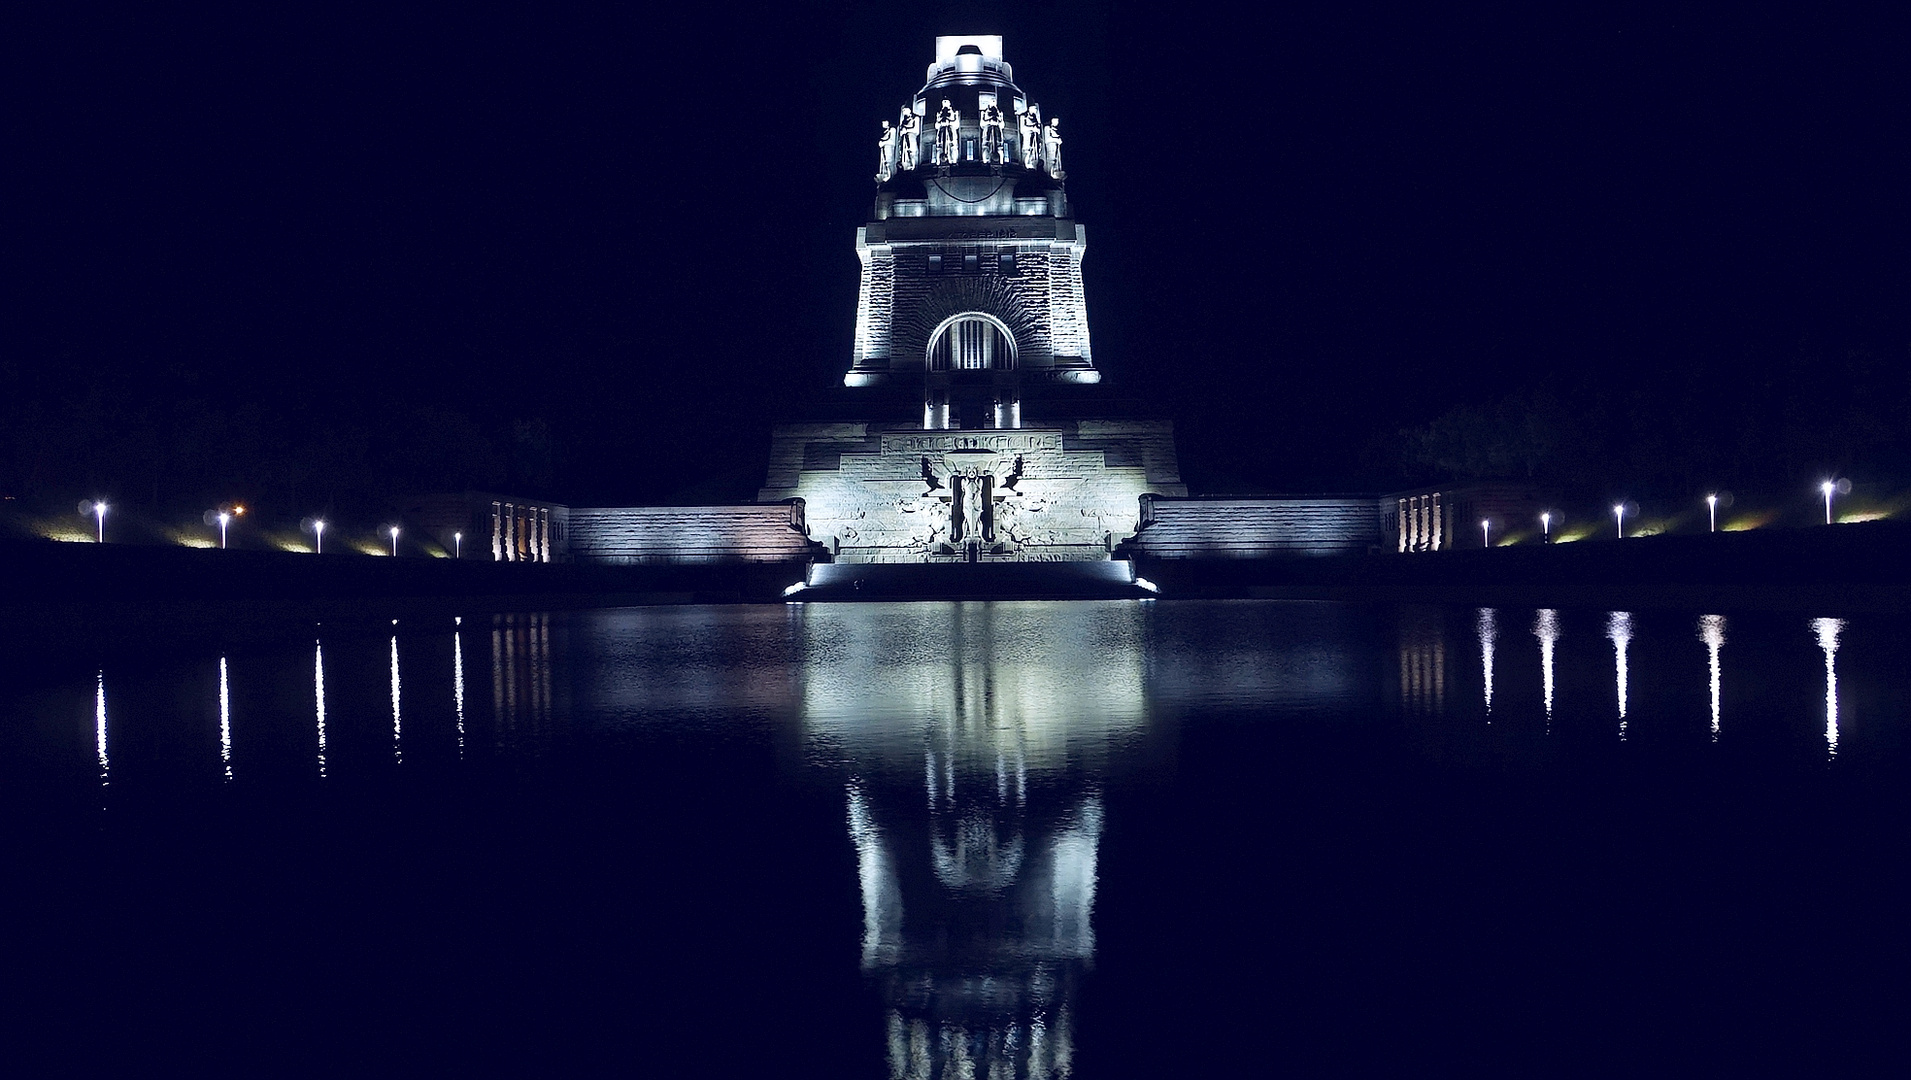 SpiegelBild - Bild (das Völkerschlachtdenkmal bei Nacht)